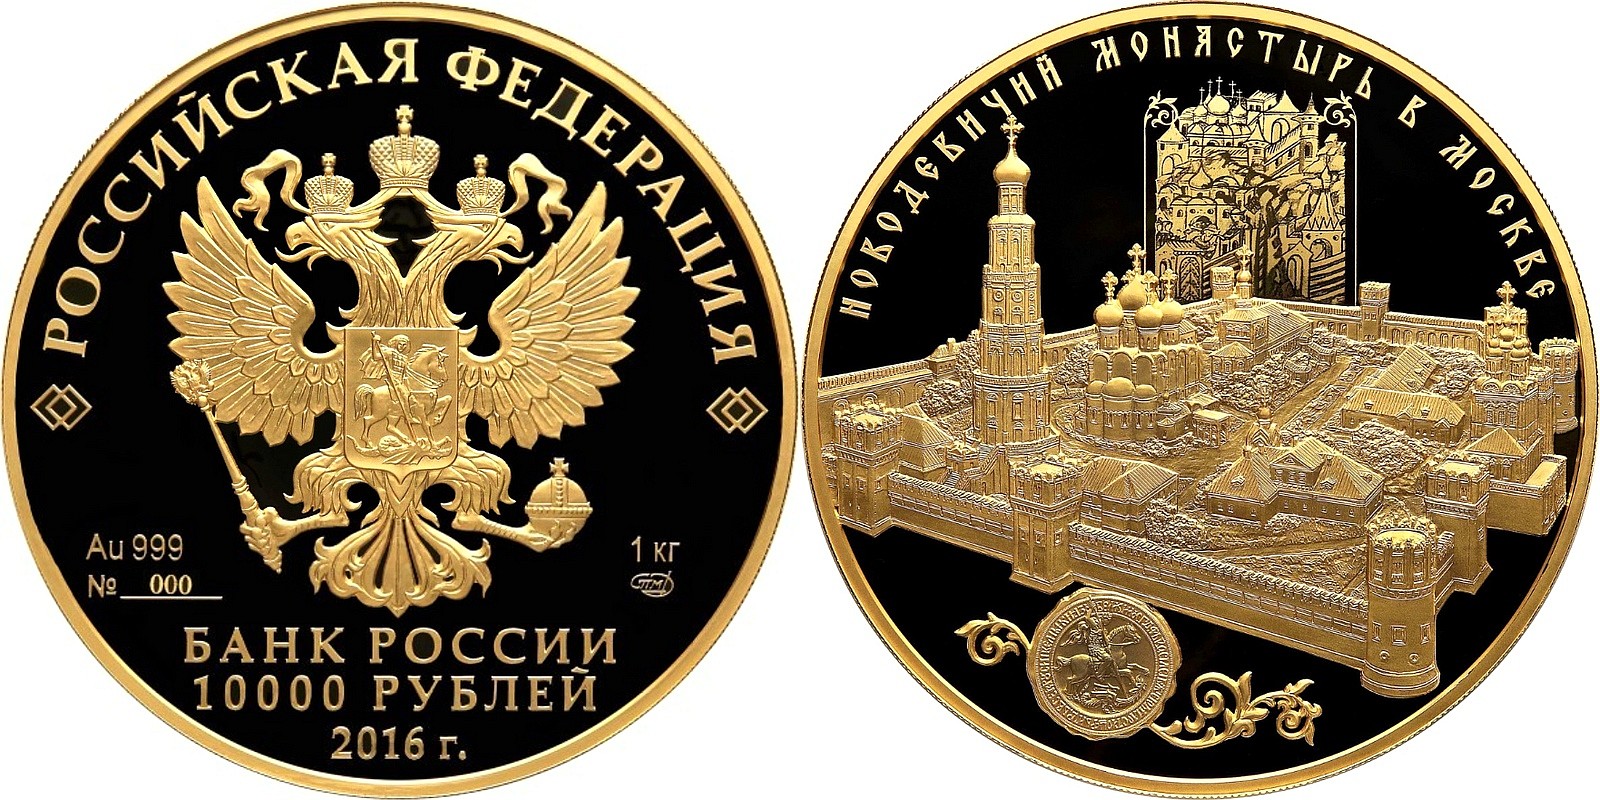 Знакомство с золотыми и серебряными монетами Банка России.